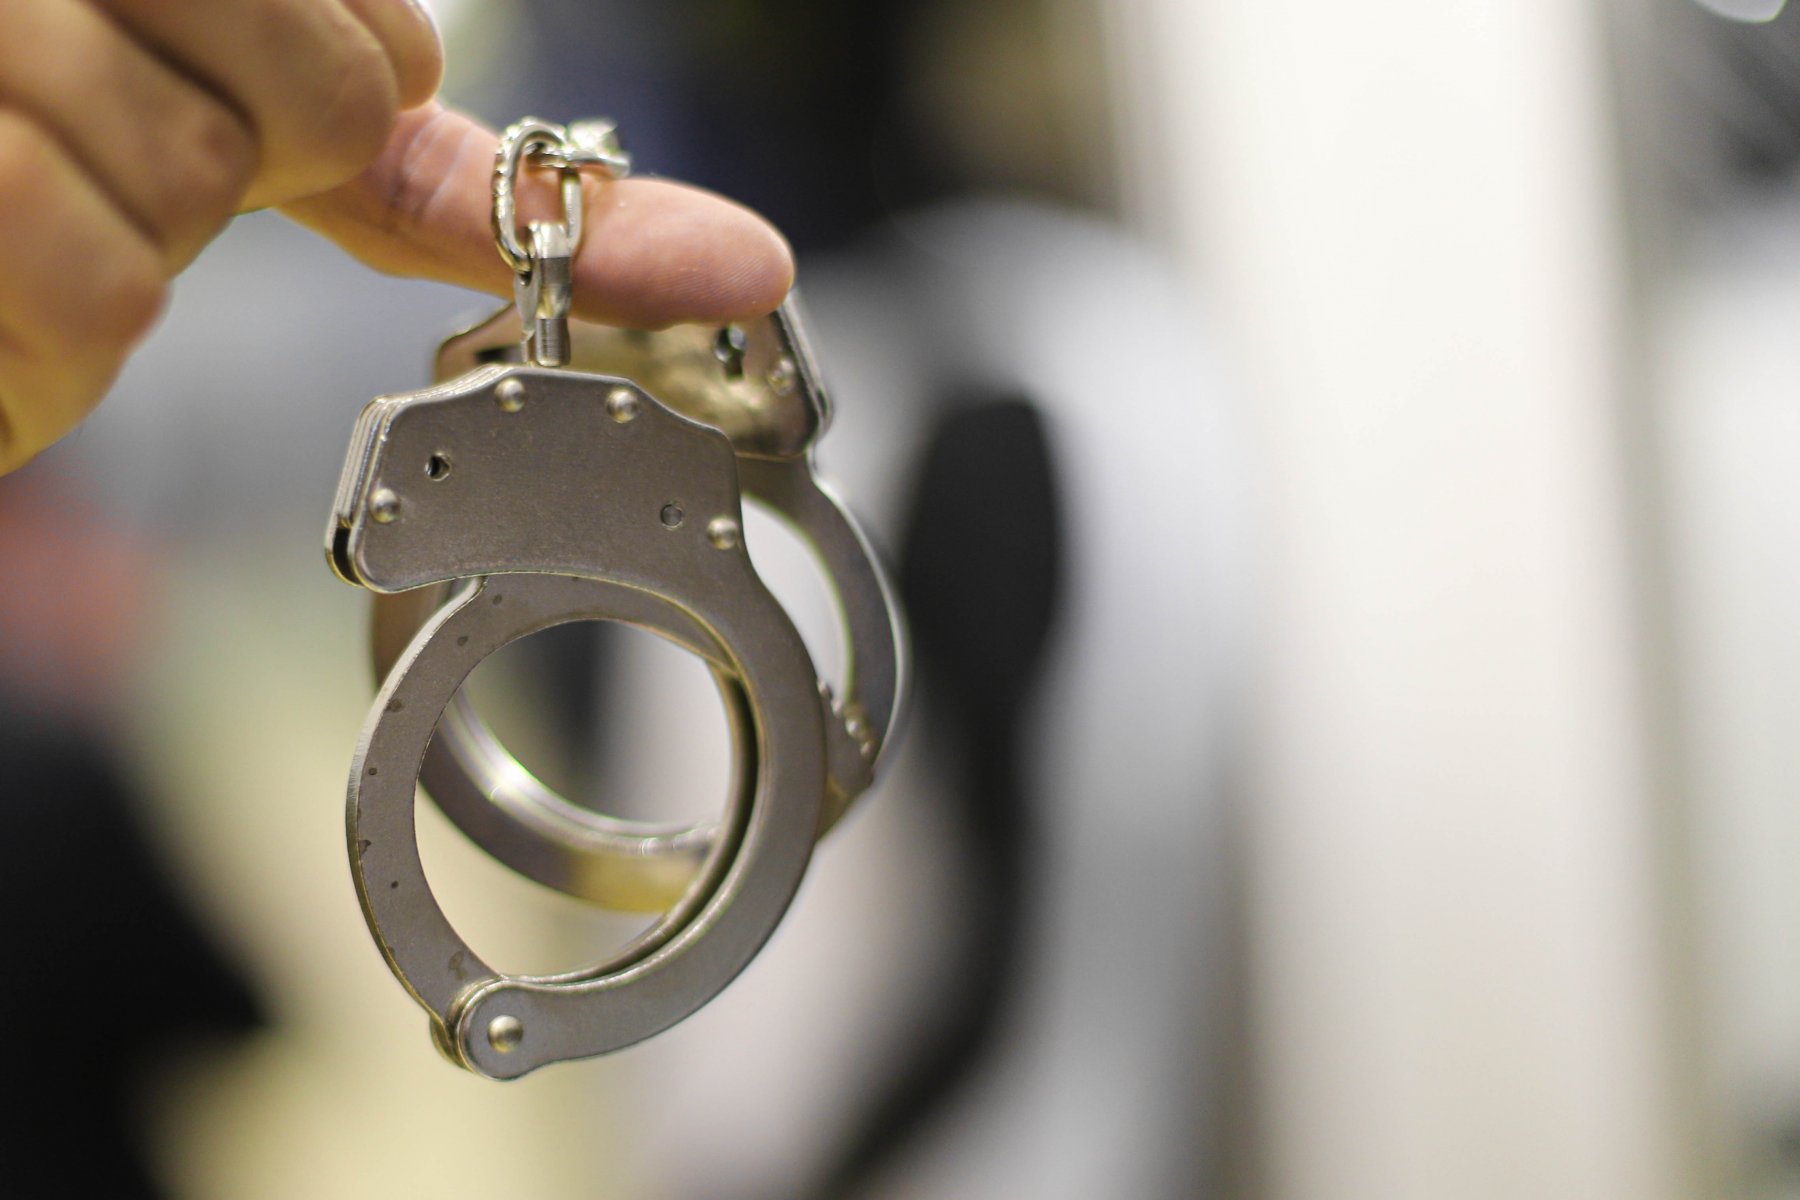 Полиция задержала наркокурьера, который забрал 3 килограмма синтетики из леса в Подмосковье